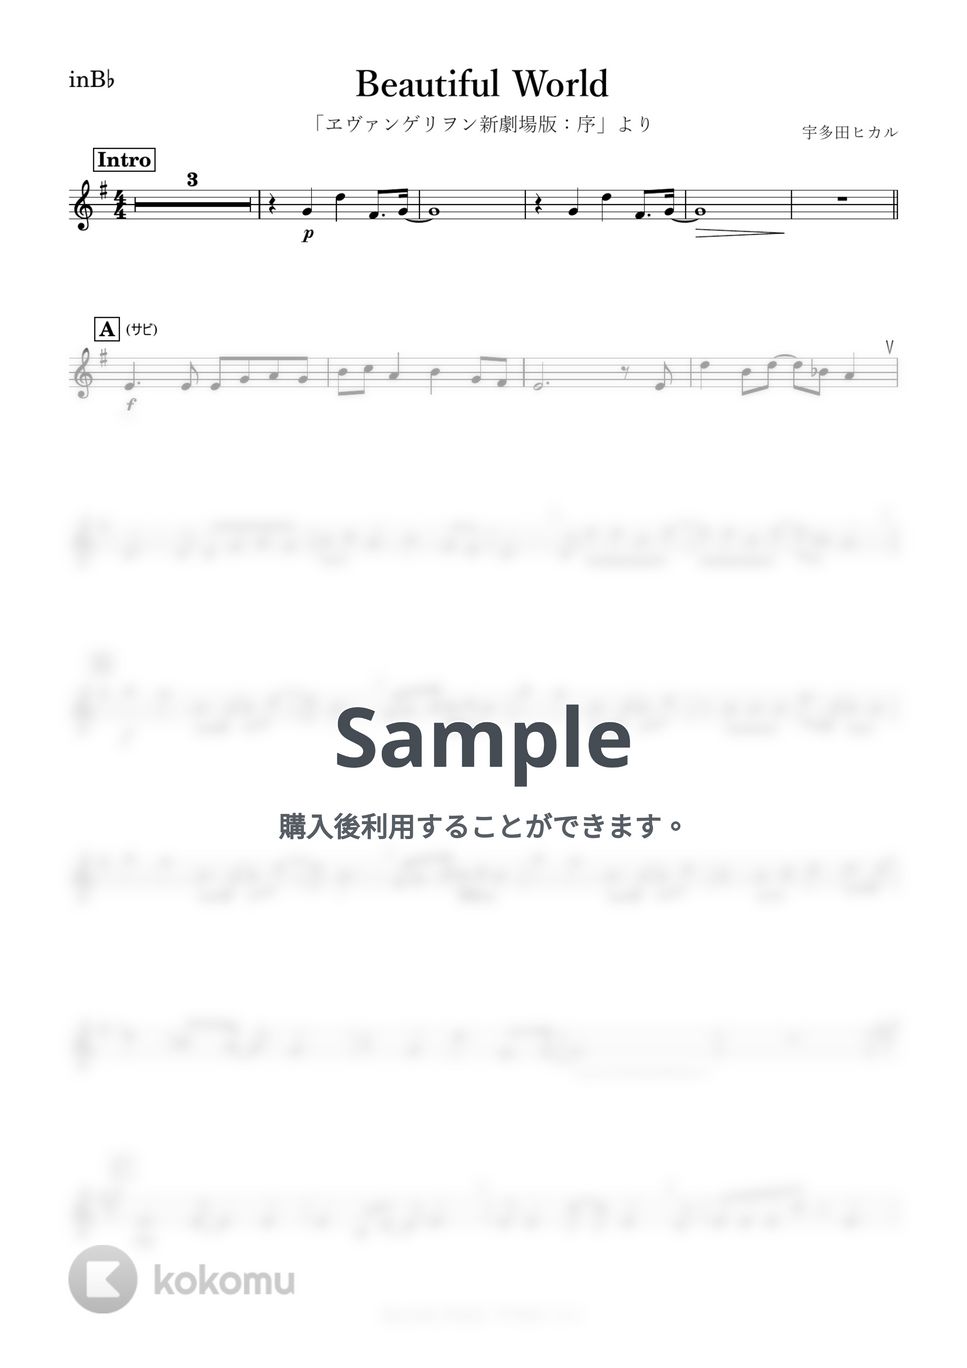 宇多田ヒカル - Beautiful World (B♭) by kanamusic